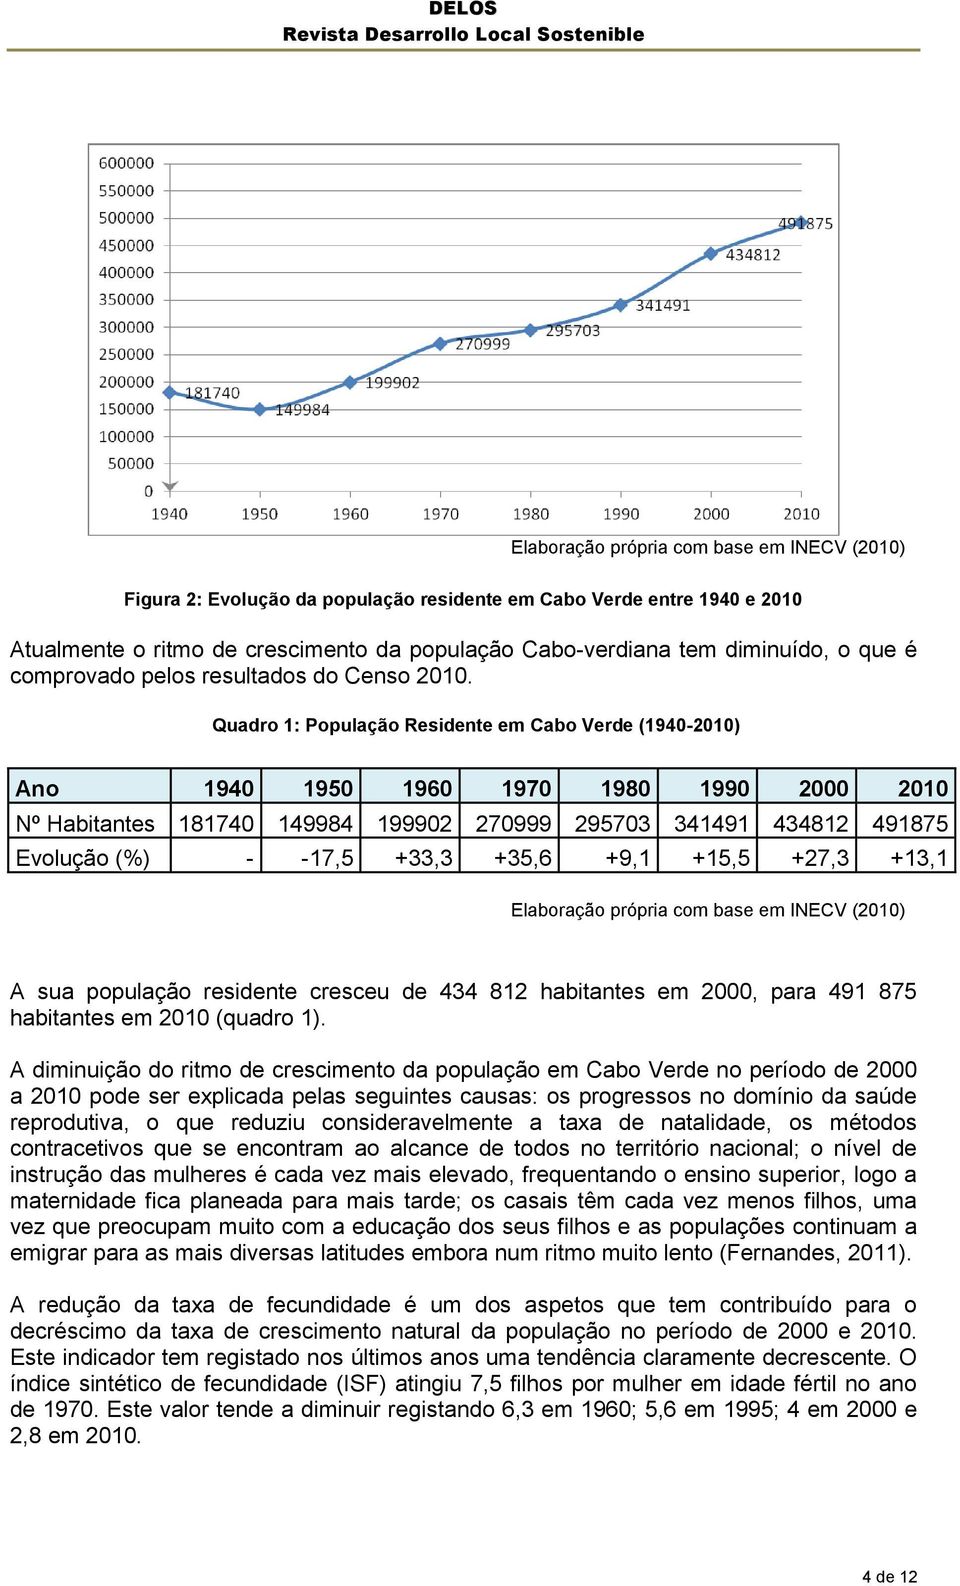 Quadro 1: População Residente em Cabo Verde (1940-2010) Ano 1940 1950 1960 1970 1980 1990 2000 2010 Nº Habitantes 181740 149984 199902 270999 295703 341491 434812 491875 Evolução (%) - -17,5 +33,3